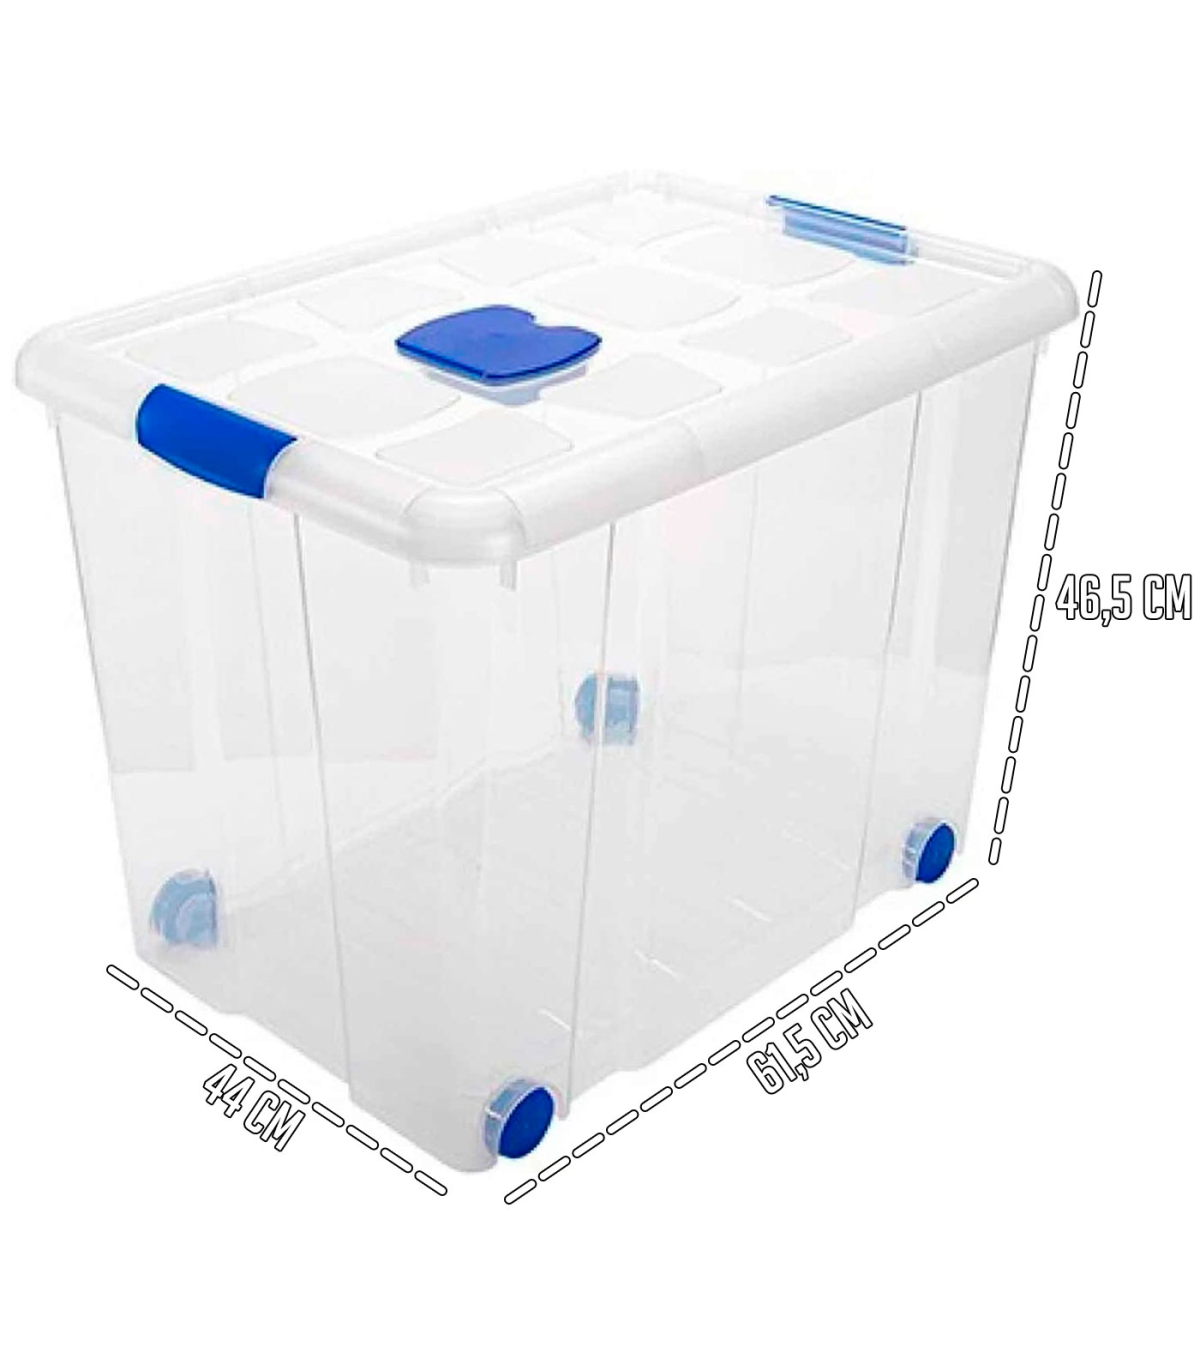  Zerdyne Caja de plástico transparente con tapa, 10 L : Todo lo  demás